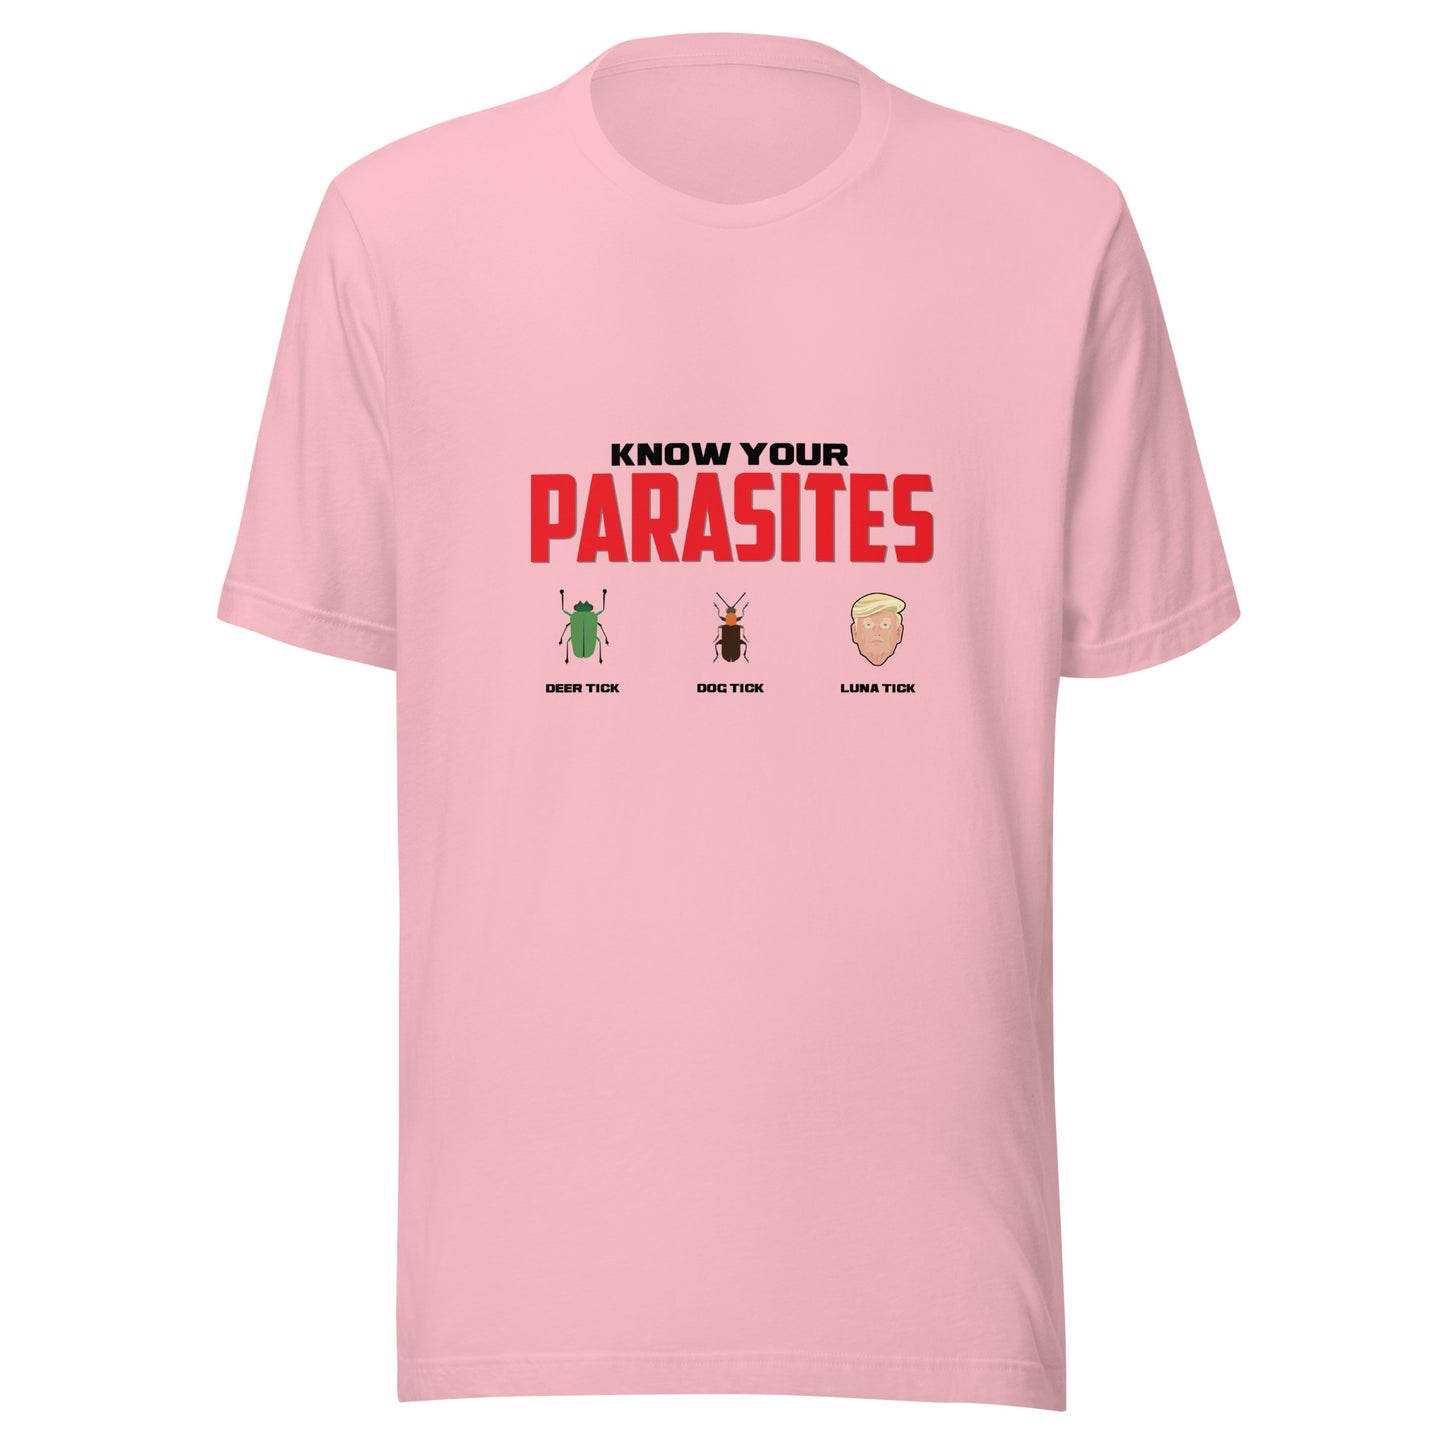 Parasites t-shirt